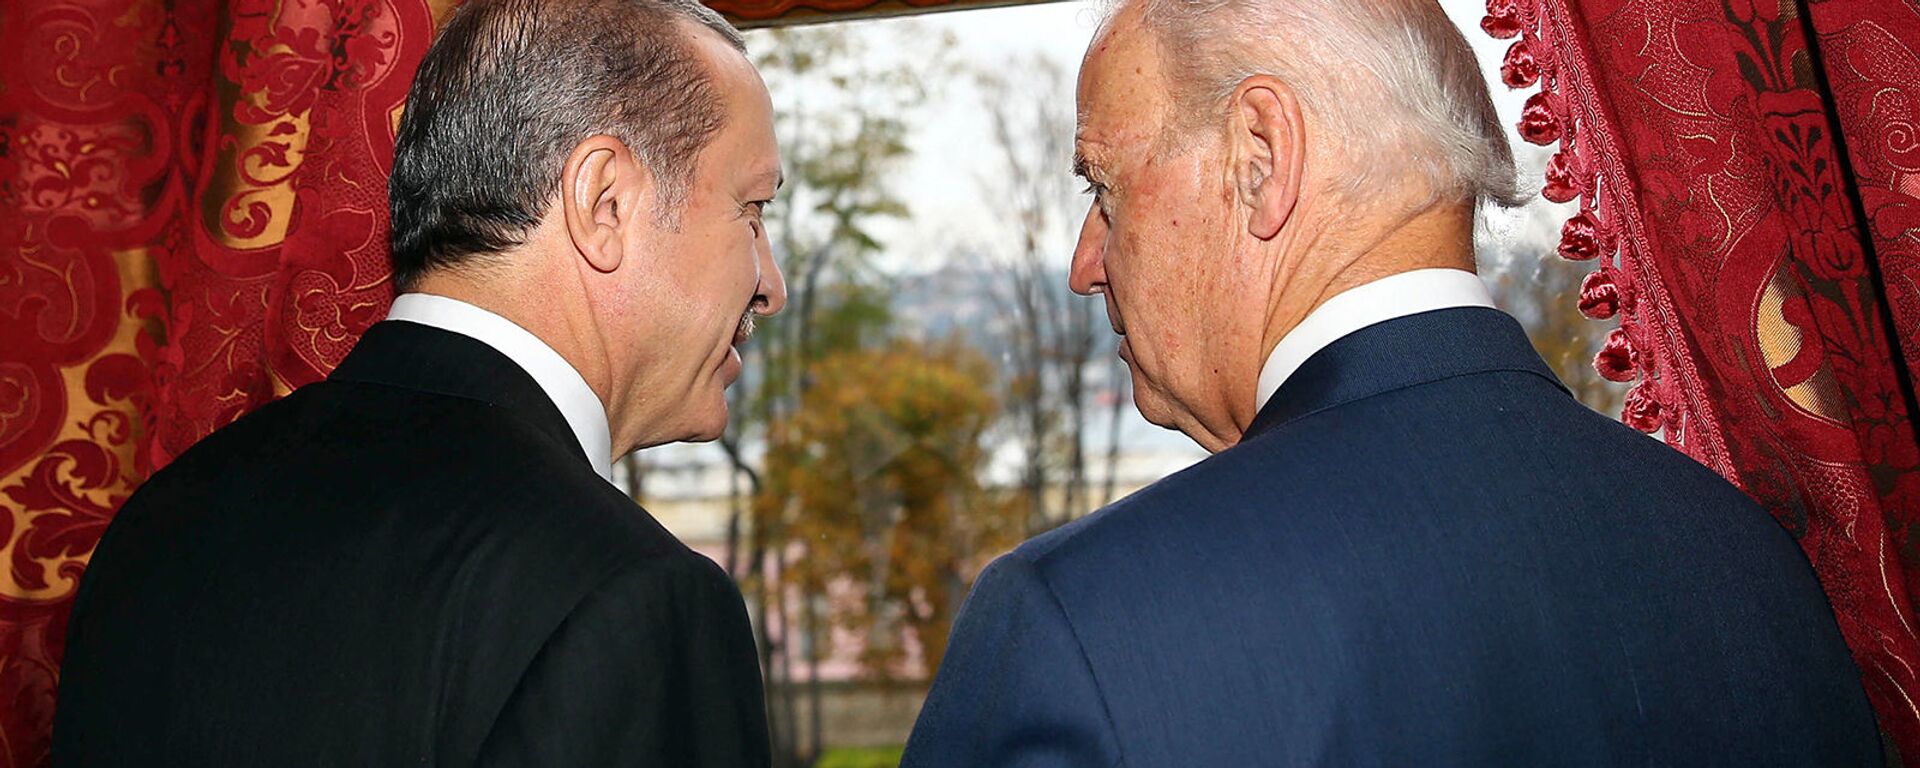 Беседа вице-президента США Джо Байдена с президентом Турции Реджепом Эрдоганом во дворце Бейлербейи (22 ноября 2014).  Стамбул - Sputnik Армения, 1920, 19.04.2021